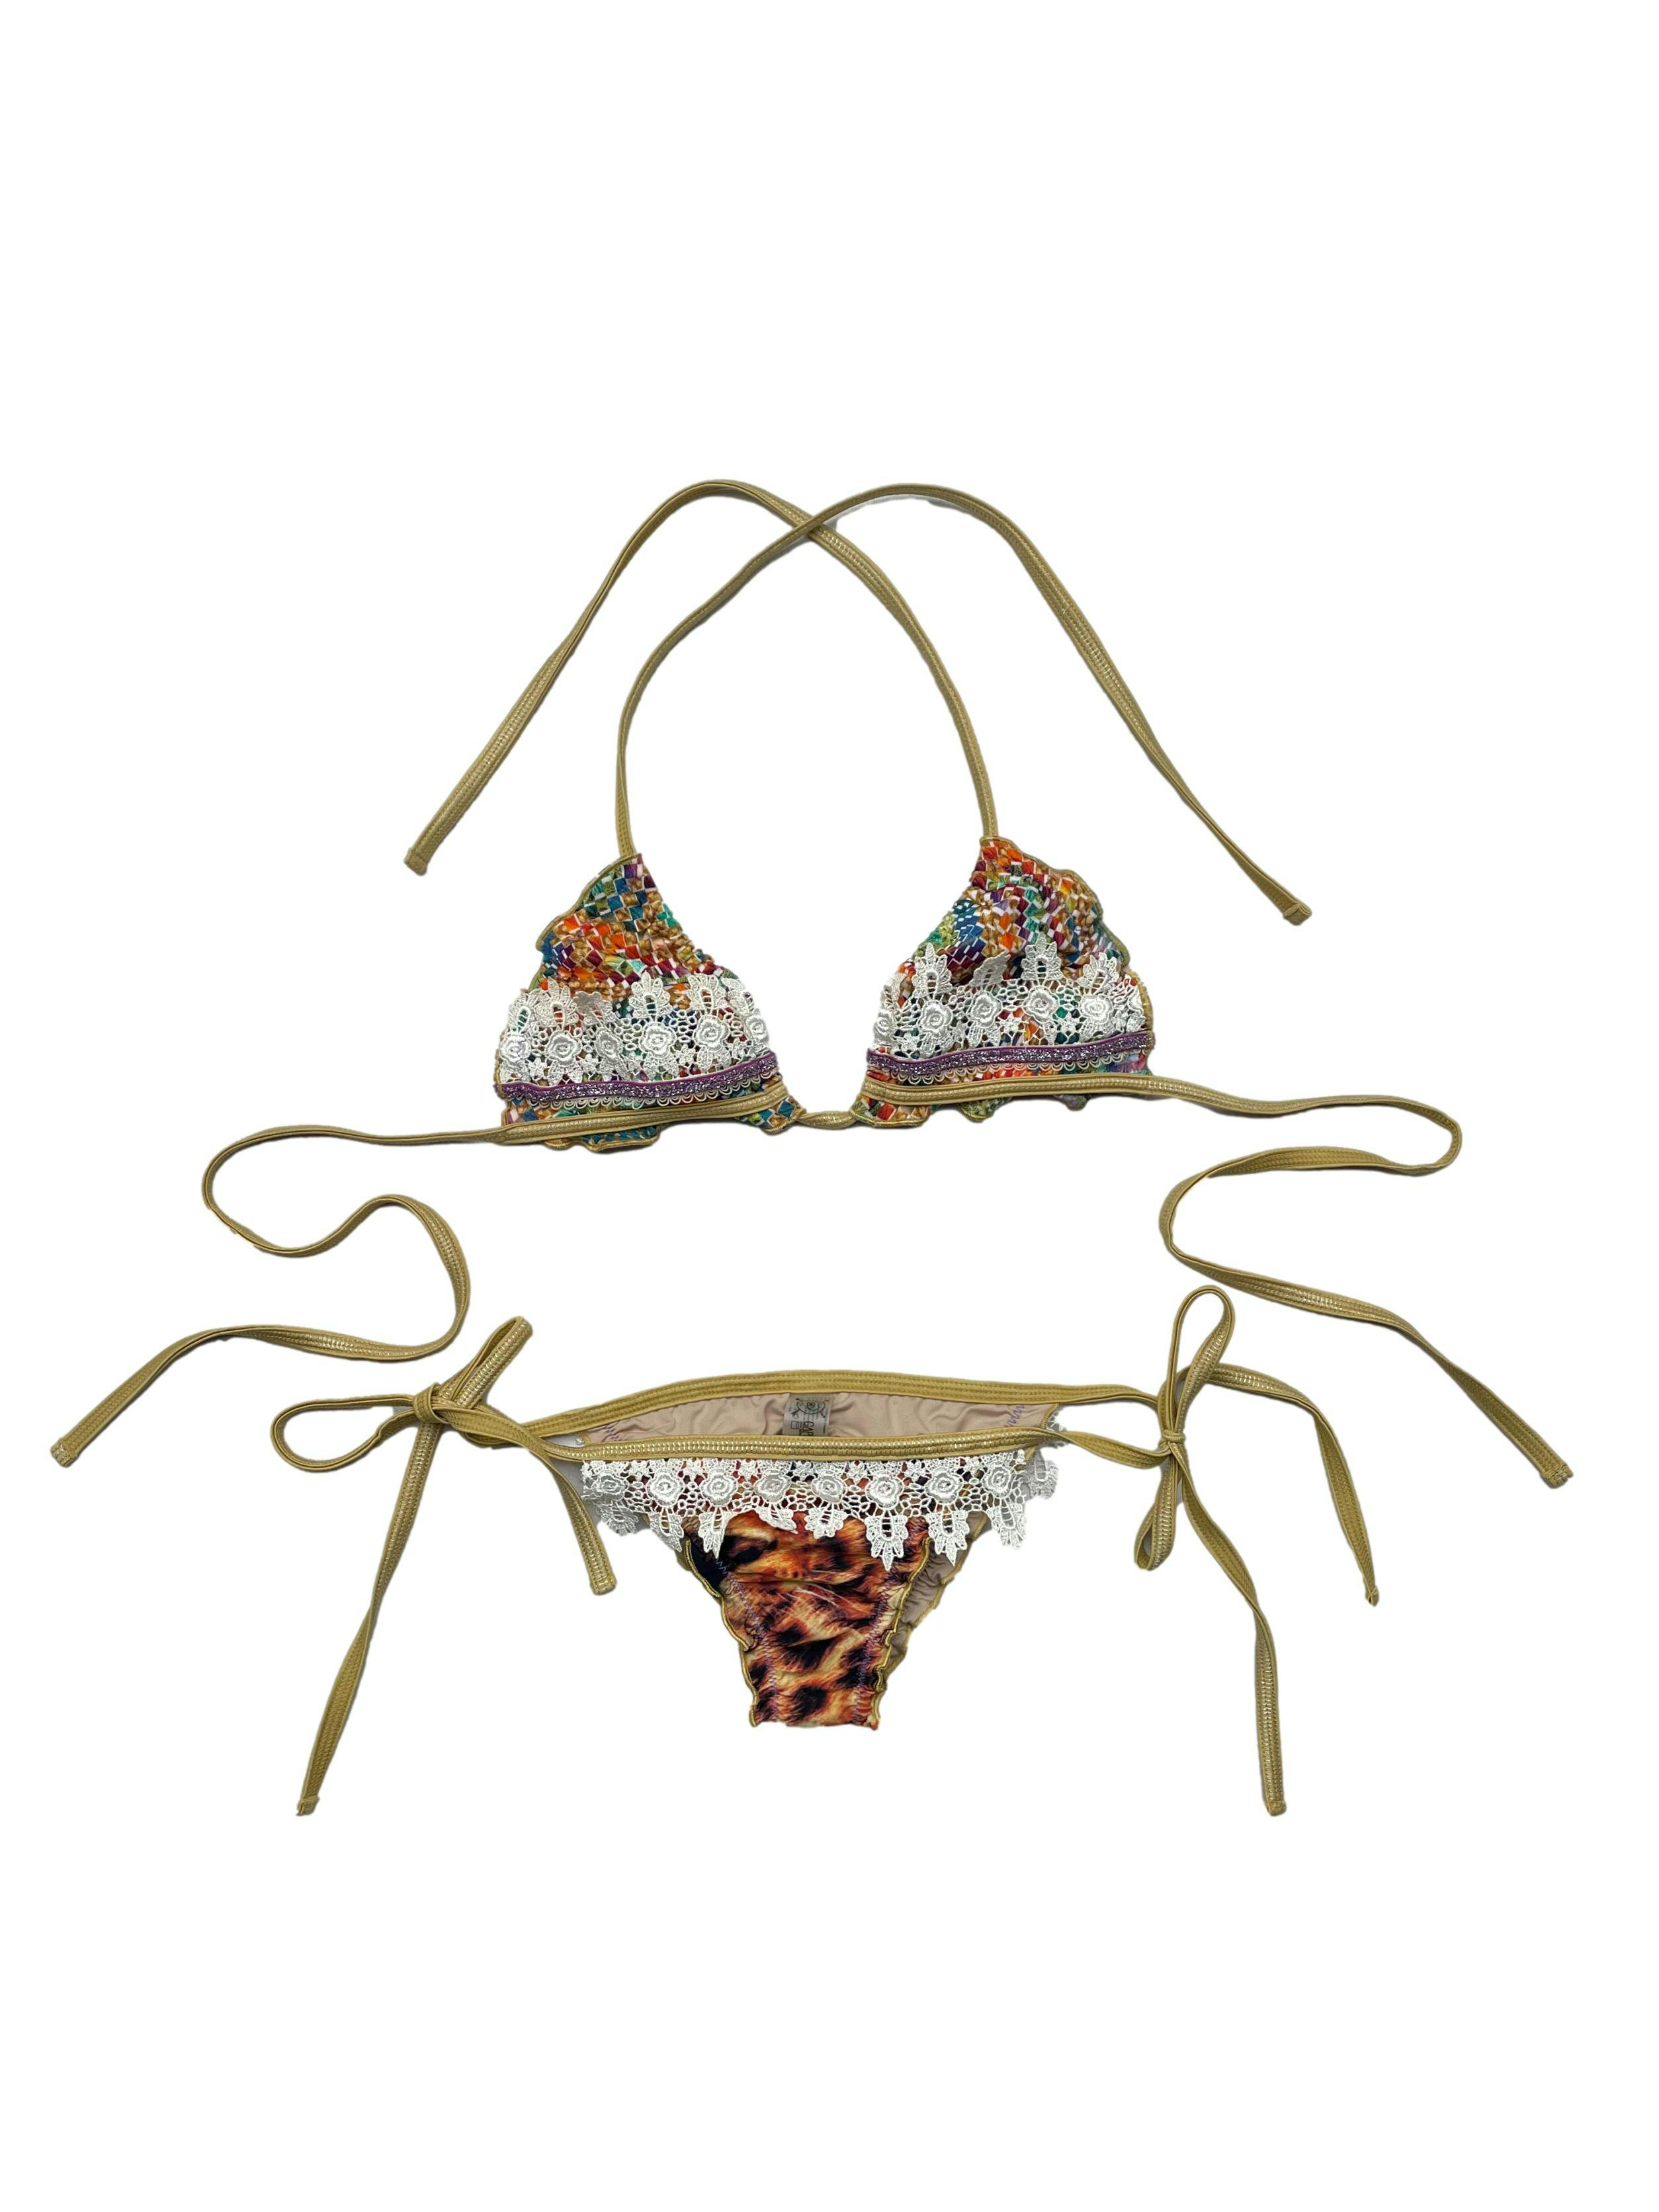 Bikini Capittana, con estampado y blondas , tiras regulables laterales, y costura sentadora en el trasero. Precio original S/330.